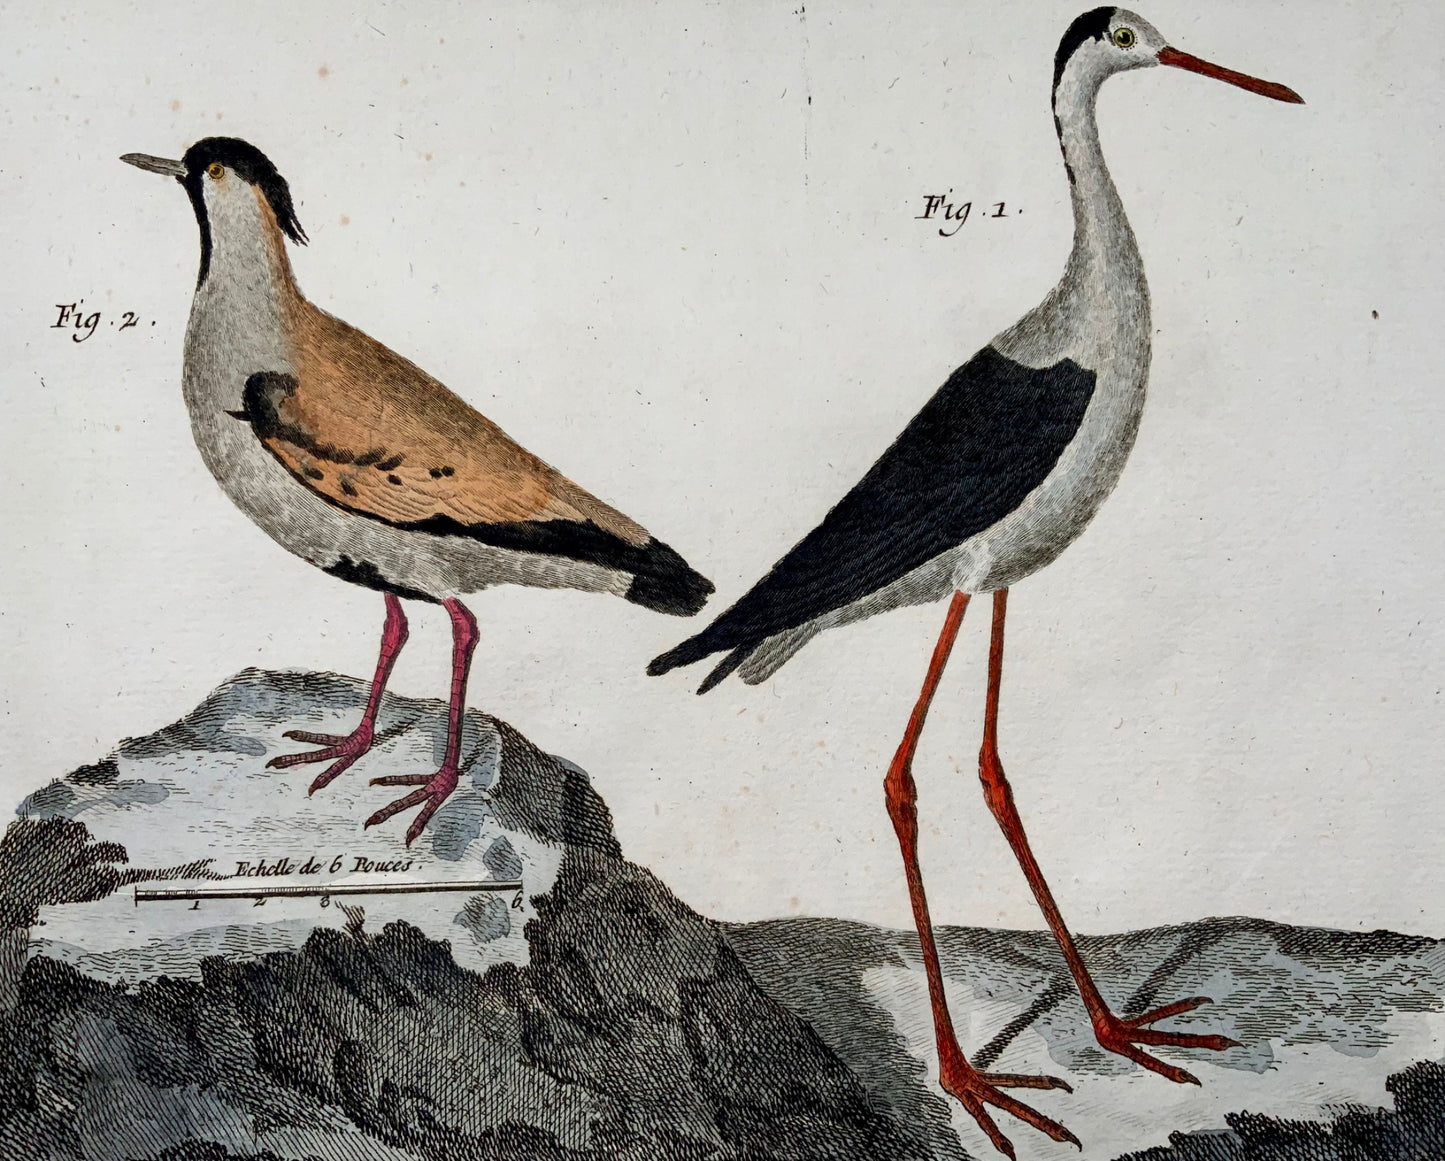 1751 Lawing, Jacana, Plover, ornitologia, Martinet, foglio grande, colore a mano